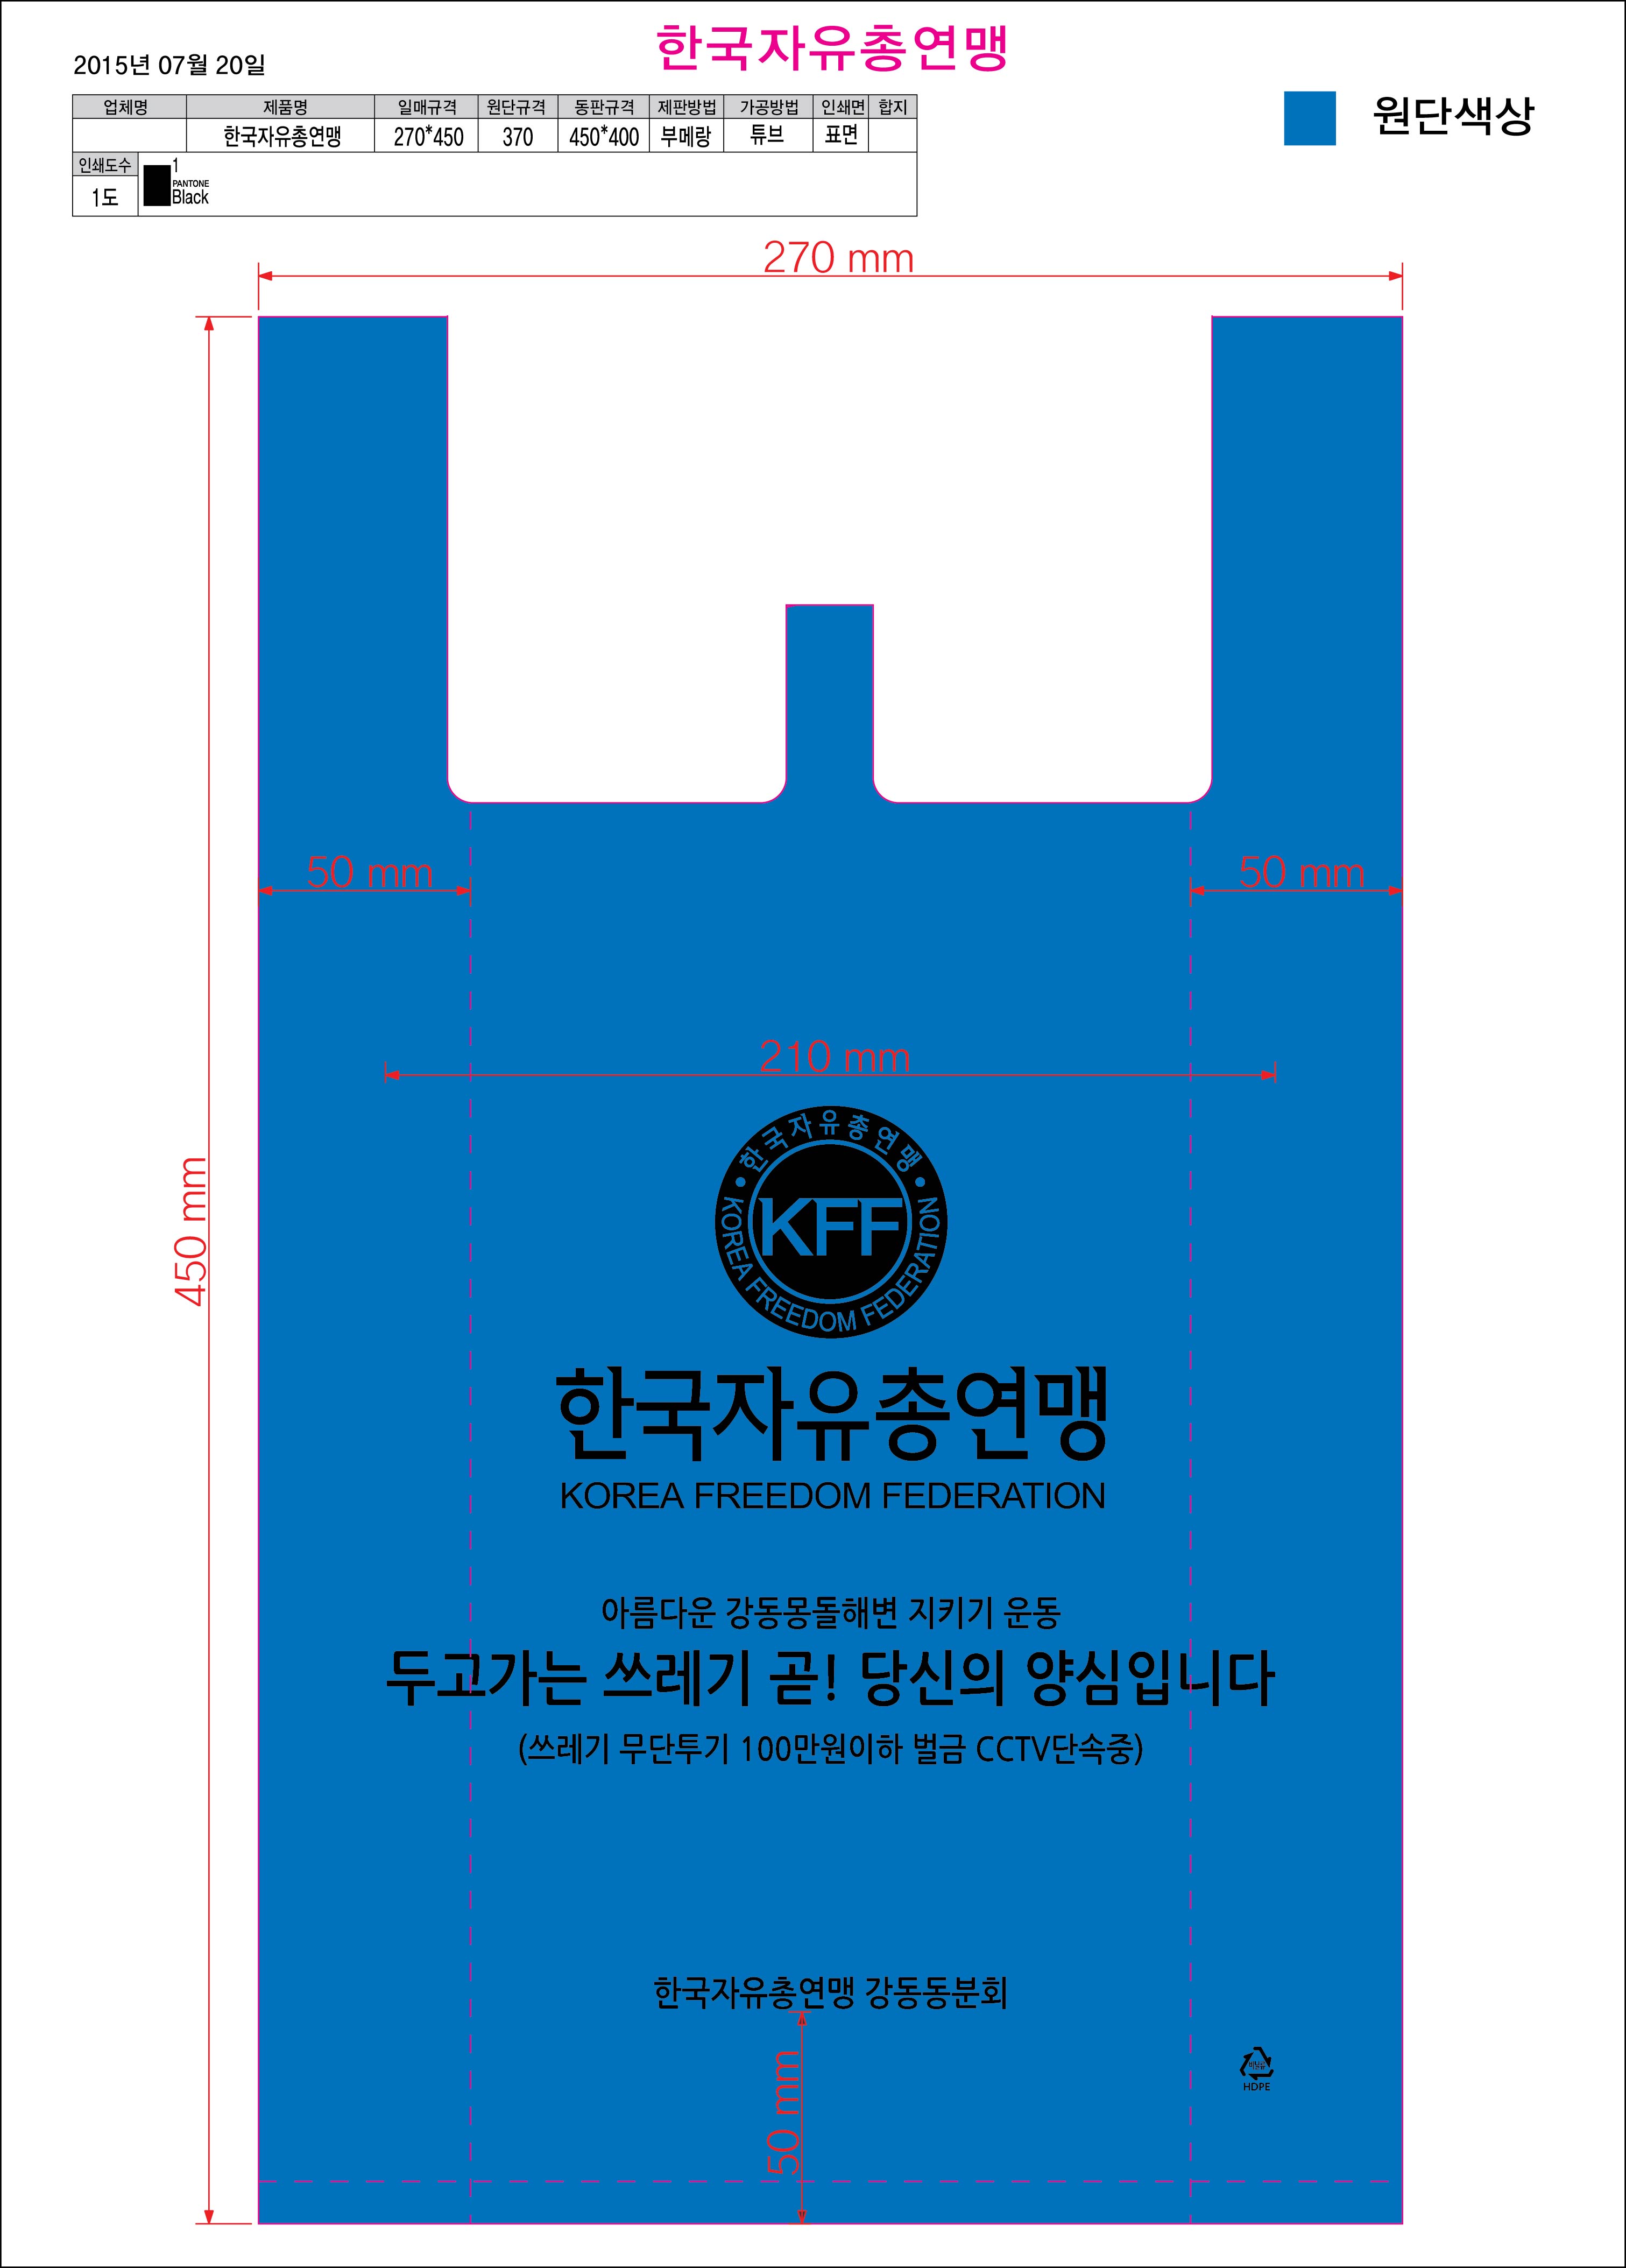 [제작] 한국자유총연맹 HD청색 비닐봉투